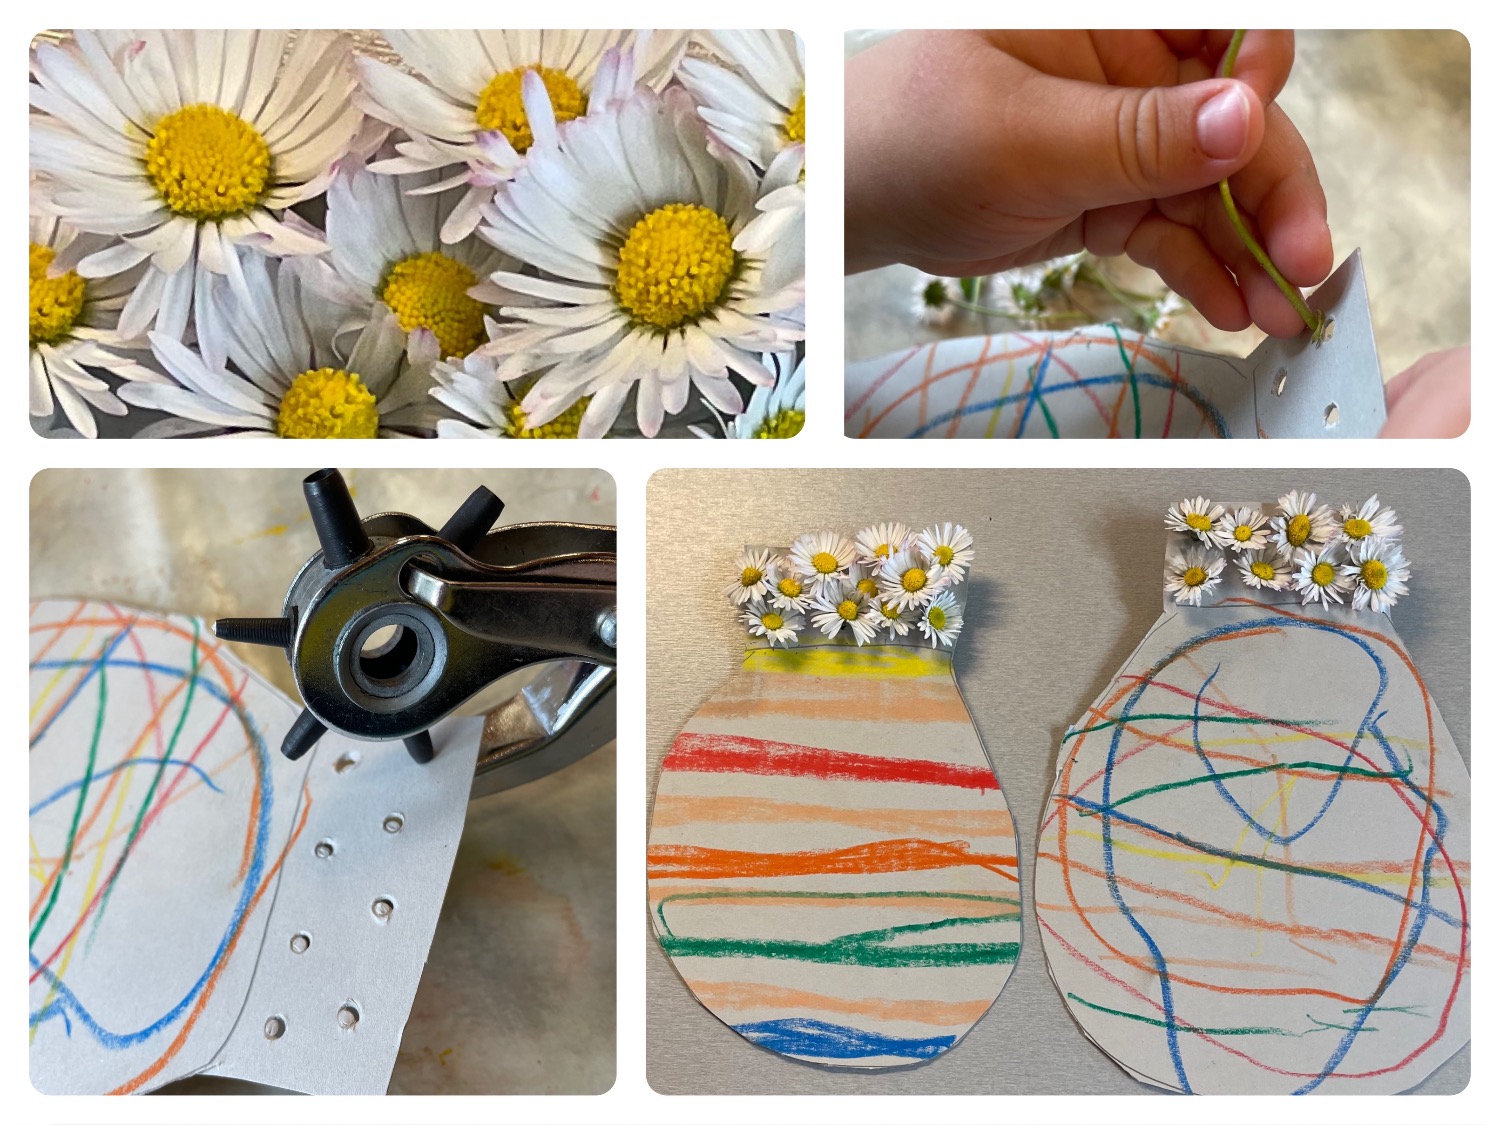 Titelbild zur Bastel- und DIY-Idee für Kinder '(775) Blumenvase basteln mit Gänseblümchen'